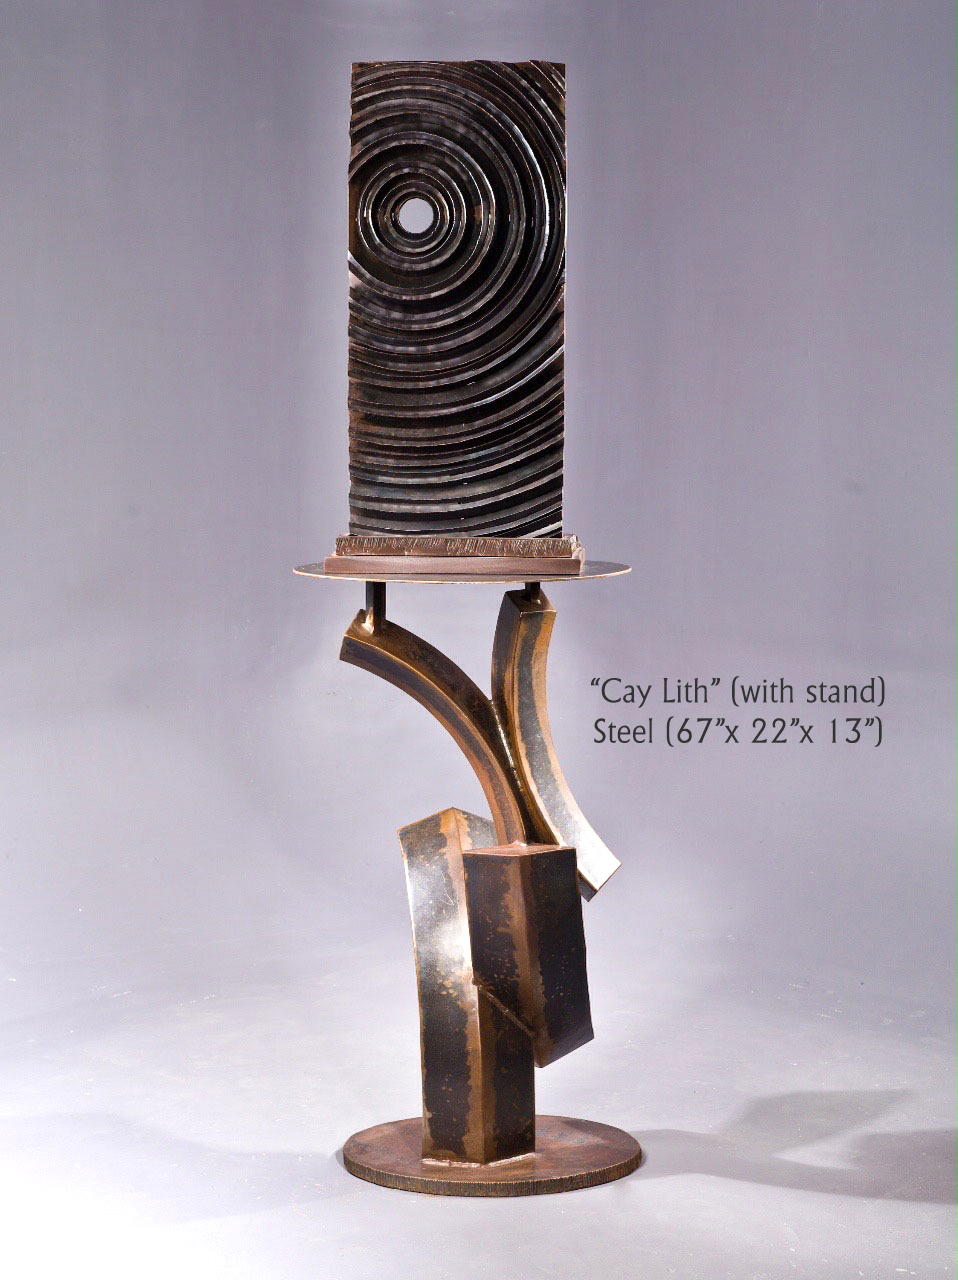 Steel (67”x 22”x 13”) 